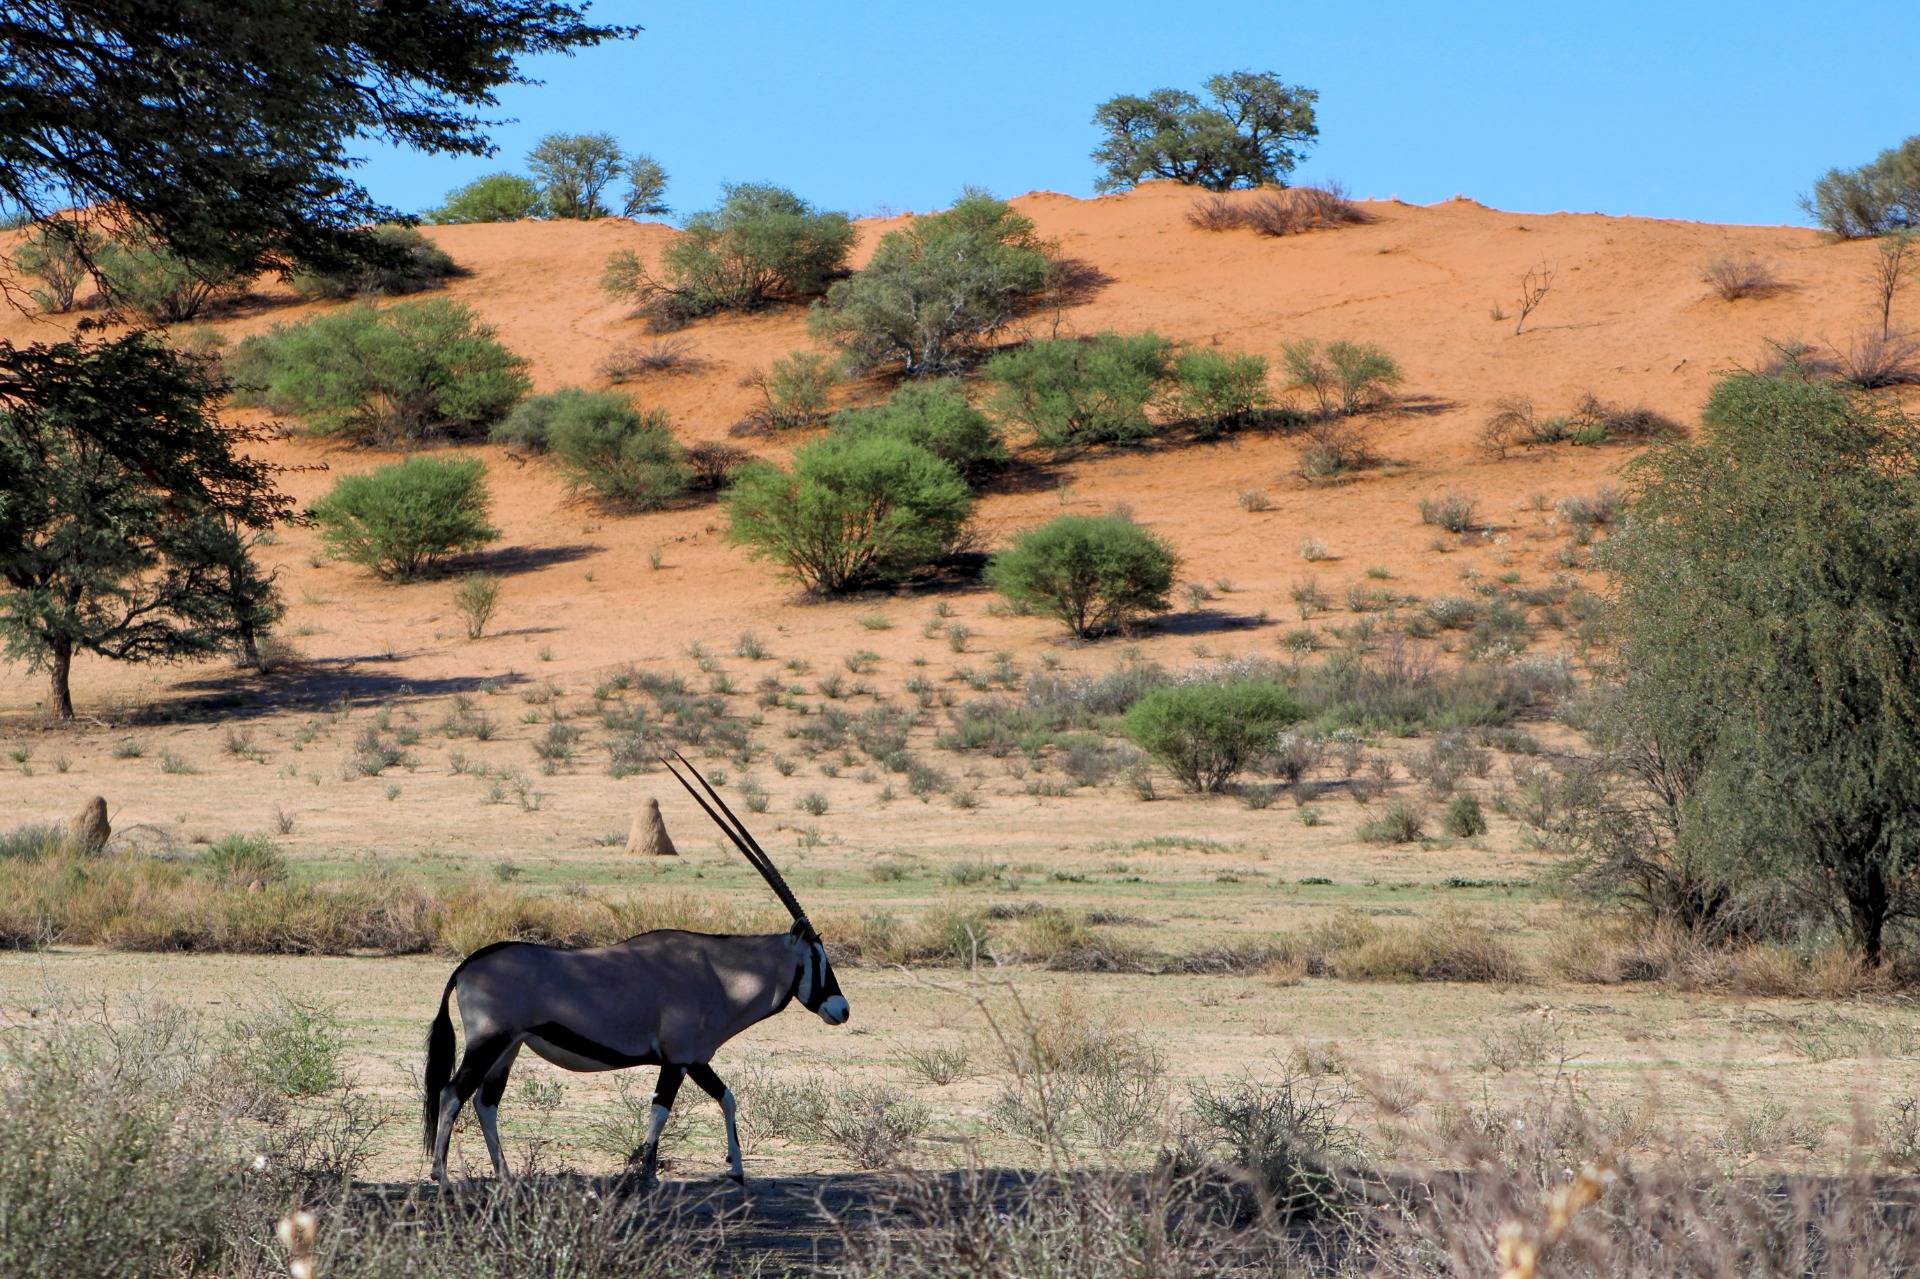 December Holiday: A trip to the Kalahari - Part 3